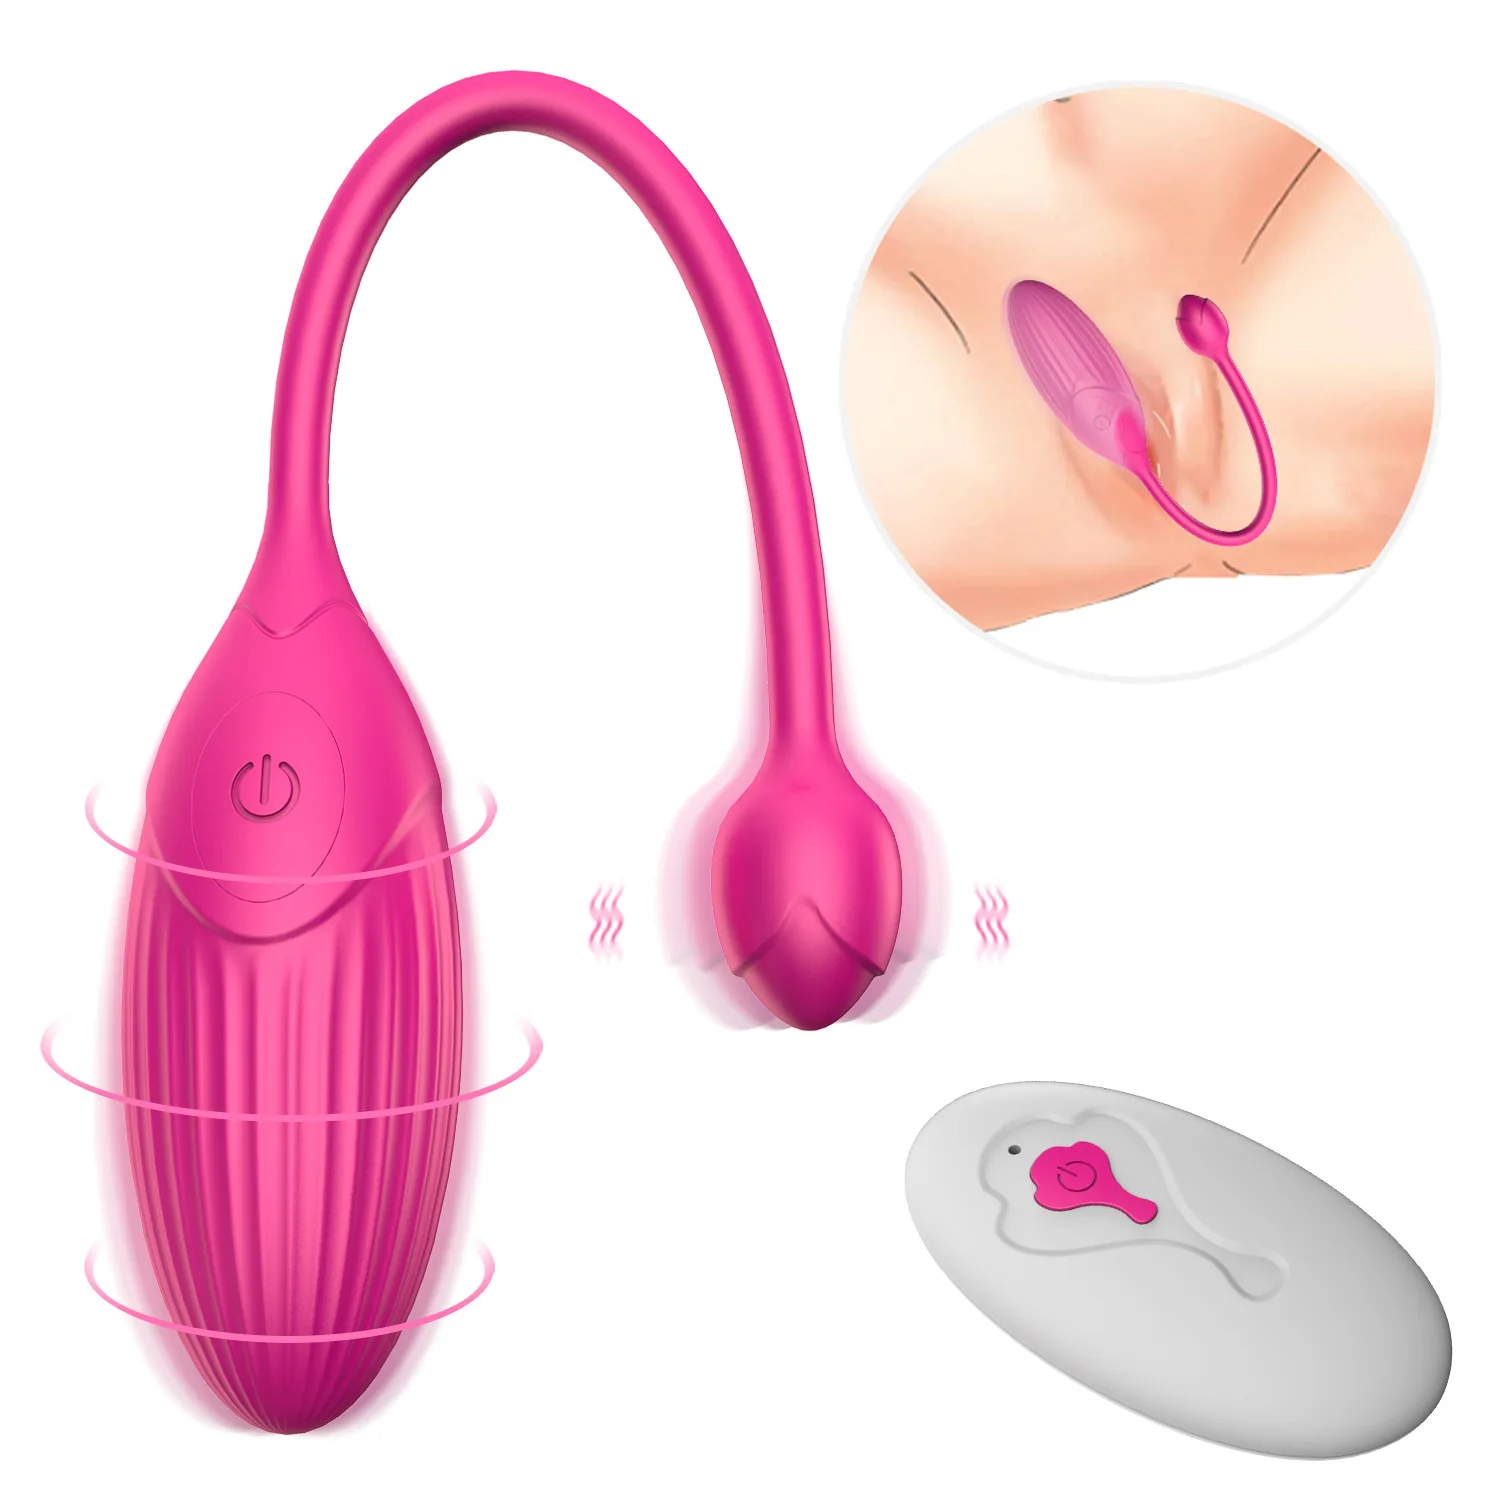 

Remote Control Vibrating Egg Female Vaginal G-spot Clitoral Stimulator Vibrators Sex Toys for Women Bullet Vibrator